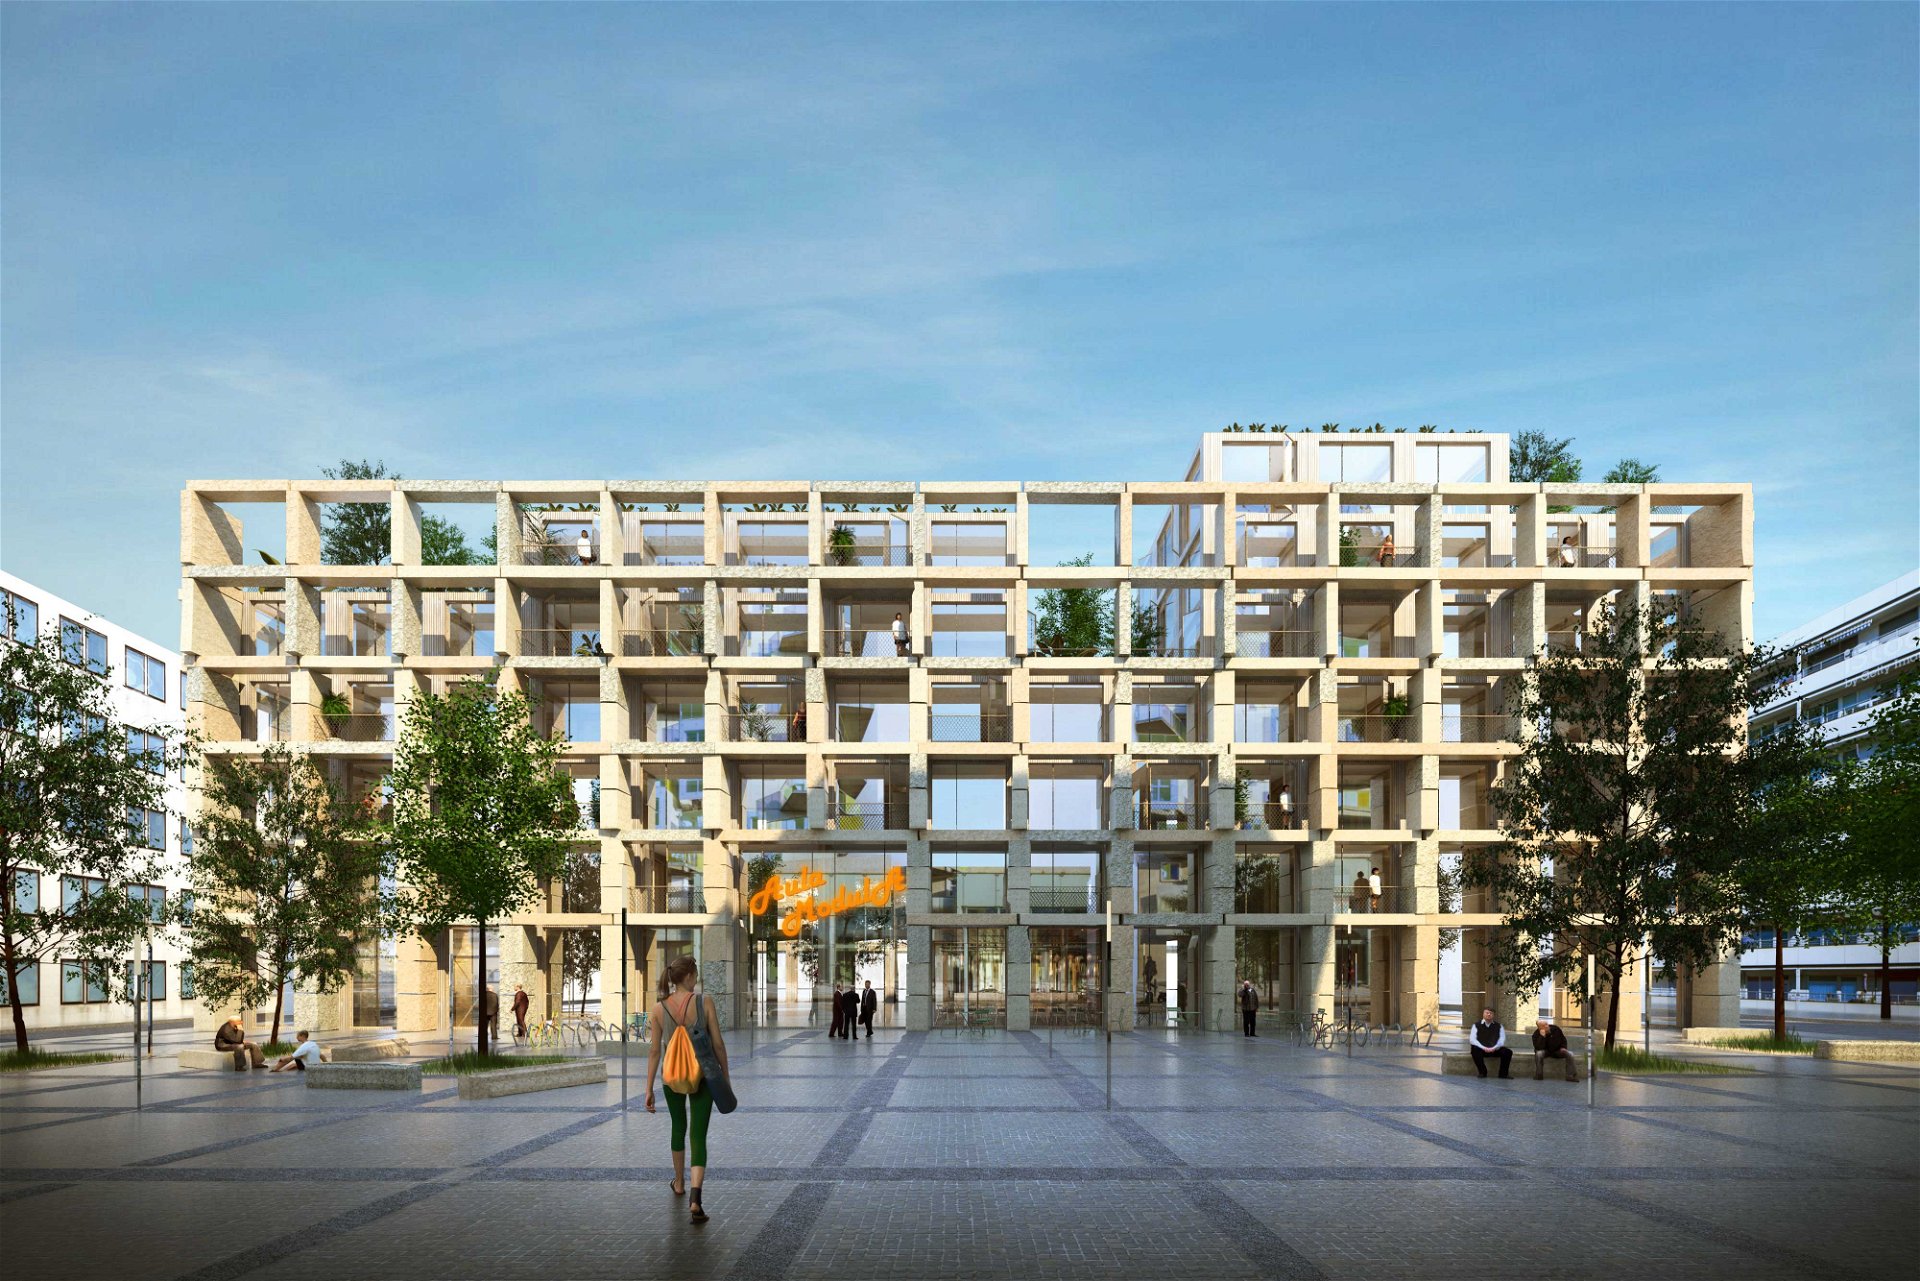 XXL-Matador: Das Wohnhaus »Aula Modula« des Pariser Architekturbüros Studio Belem beschäftigt sich mit der Frage, wie wir in Zukunft wohnen wollen. Im Inneren des Holzbauwerks verbergen sich Wohnungen mit 16 m2 großen Raummodulen.